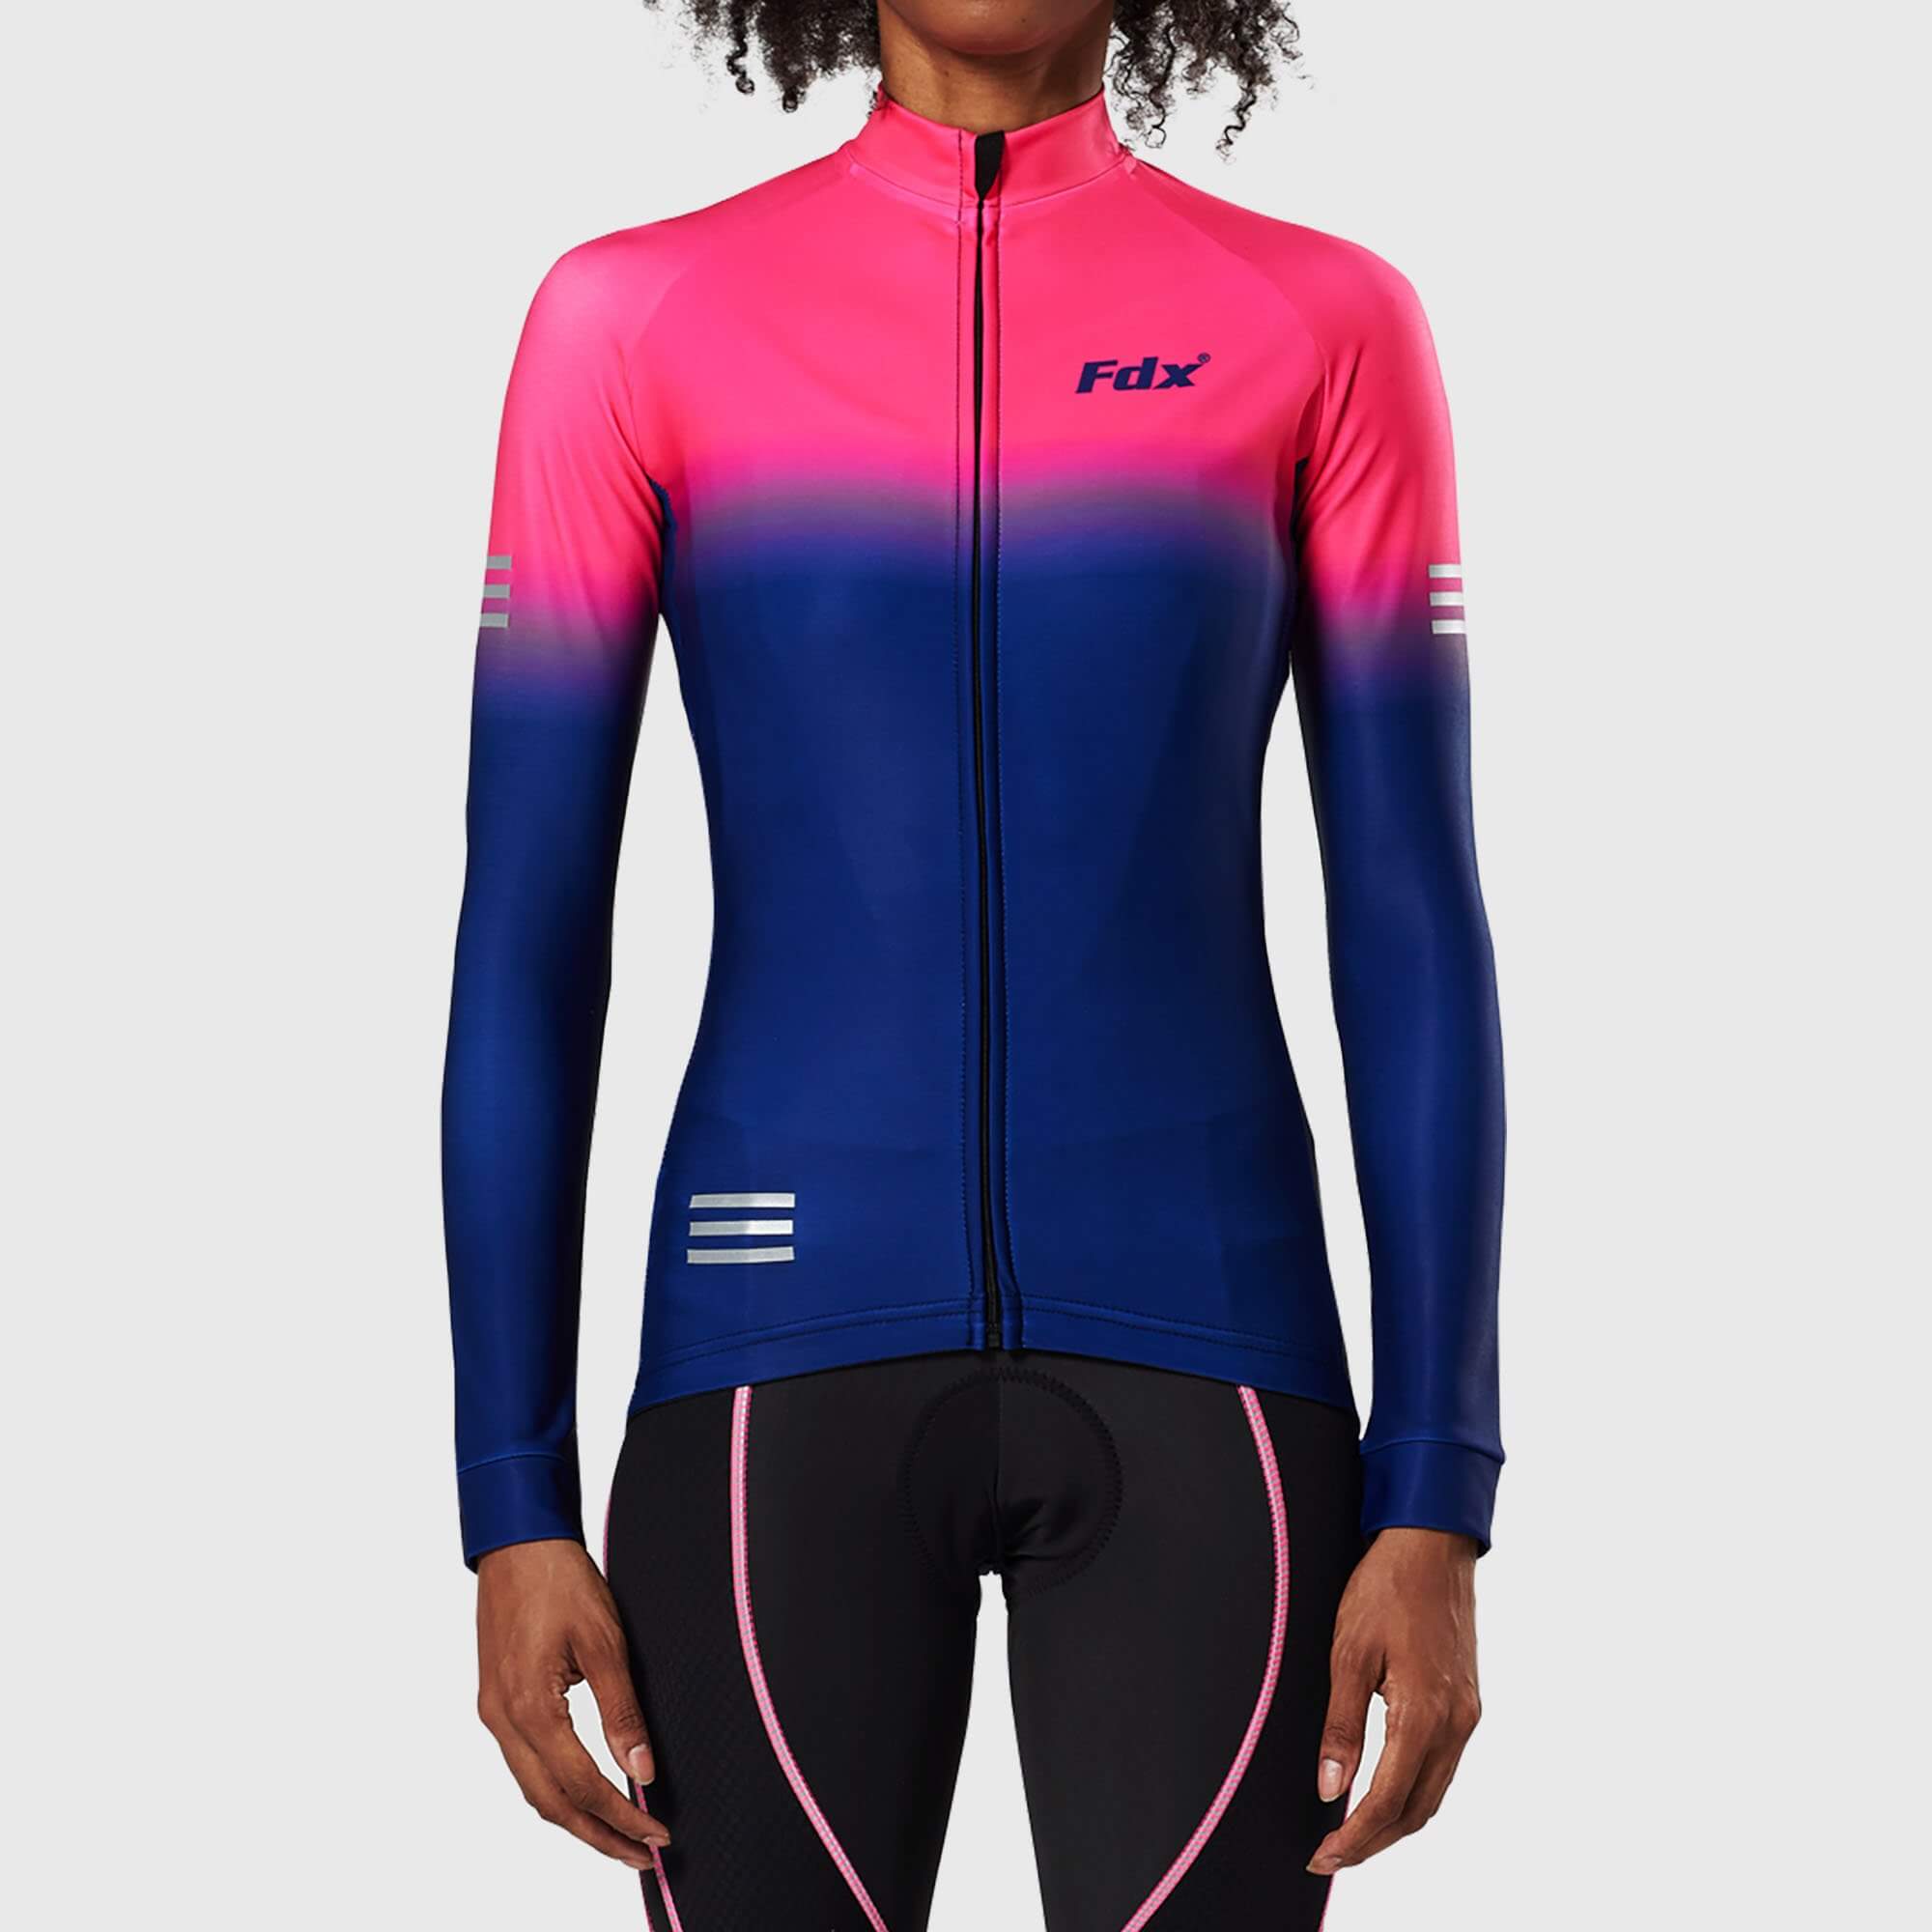 Fdx Women's Pink & Blue Long Sleeve Cycling Jersey & Gel Padded Bib Tights Pants for Winter Roubaix Thermal Fleece Road Bike Wear Windproof, Hi-viz Reflectors & Pockets - Duo